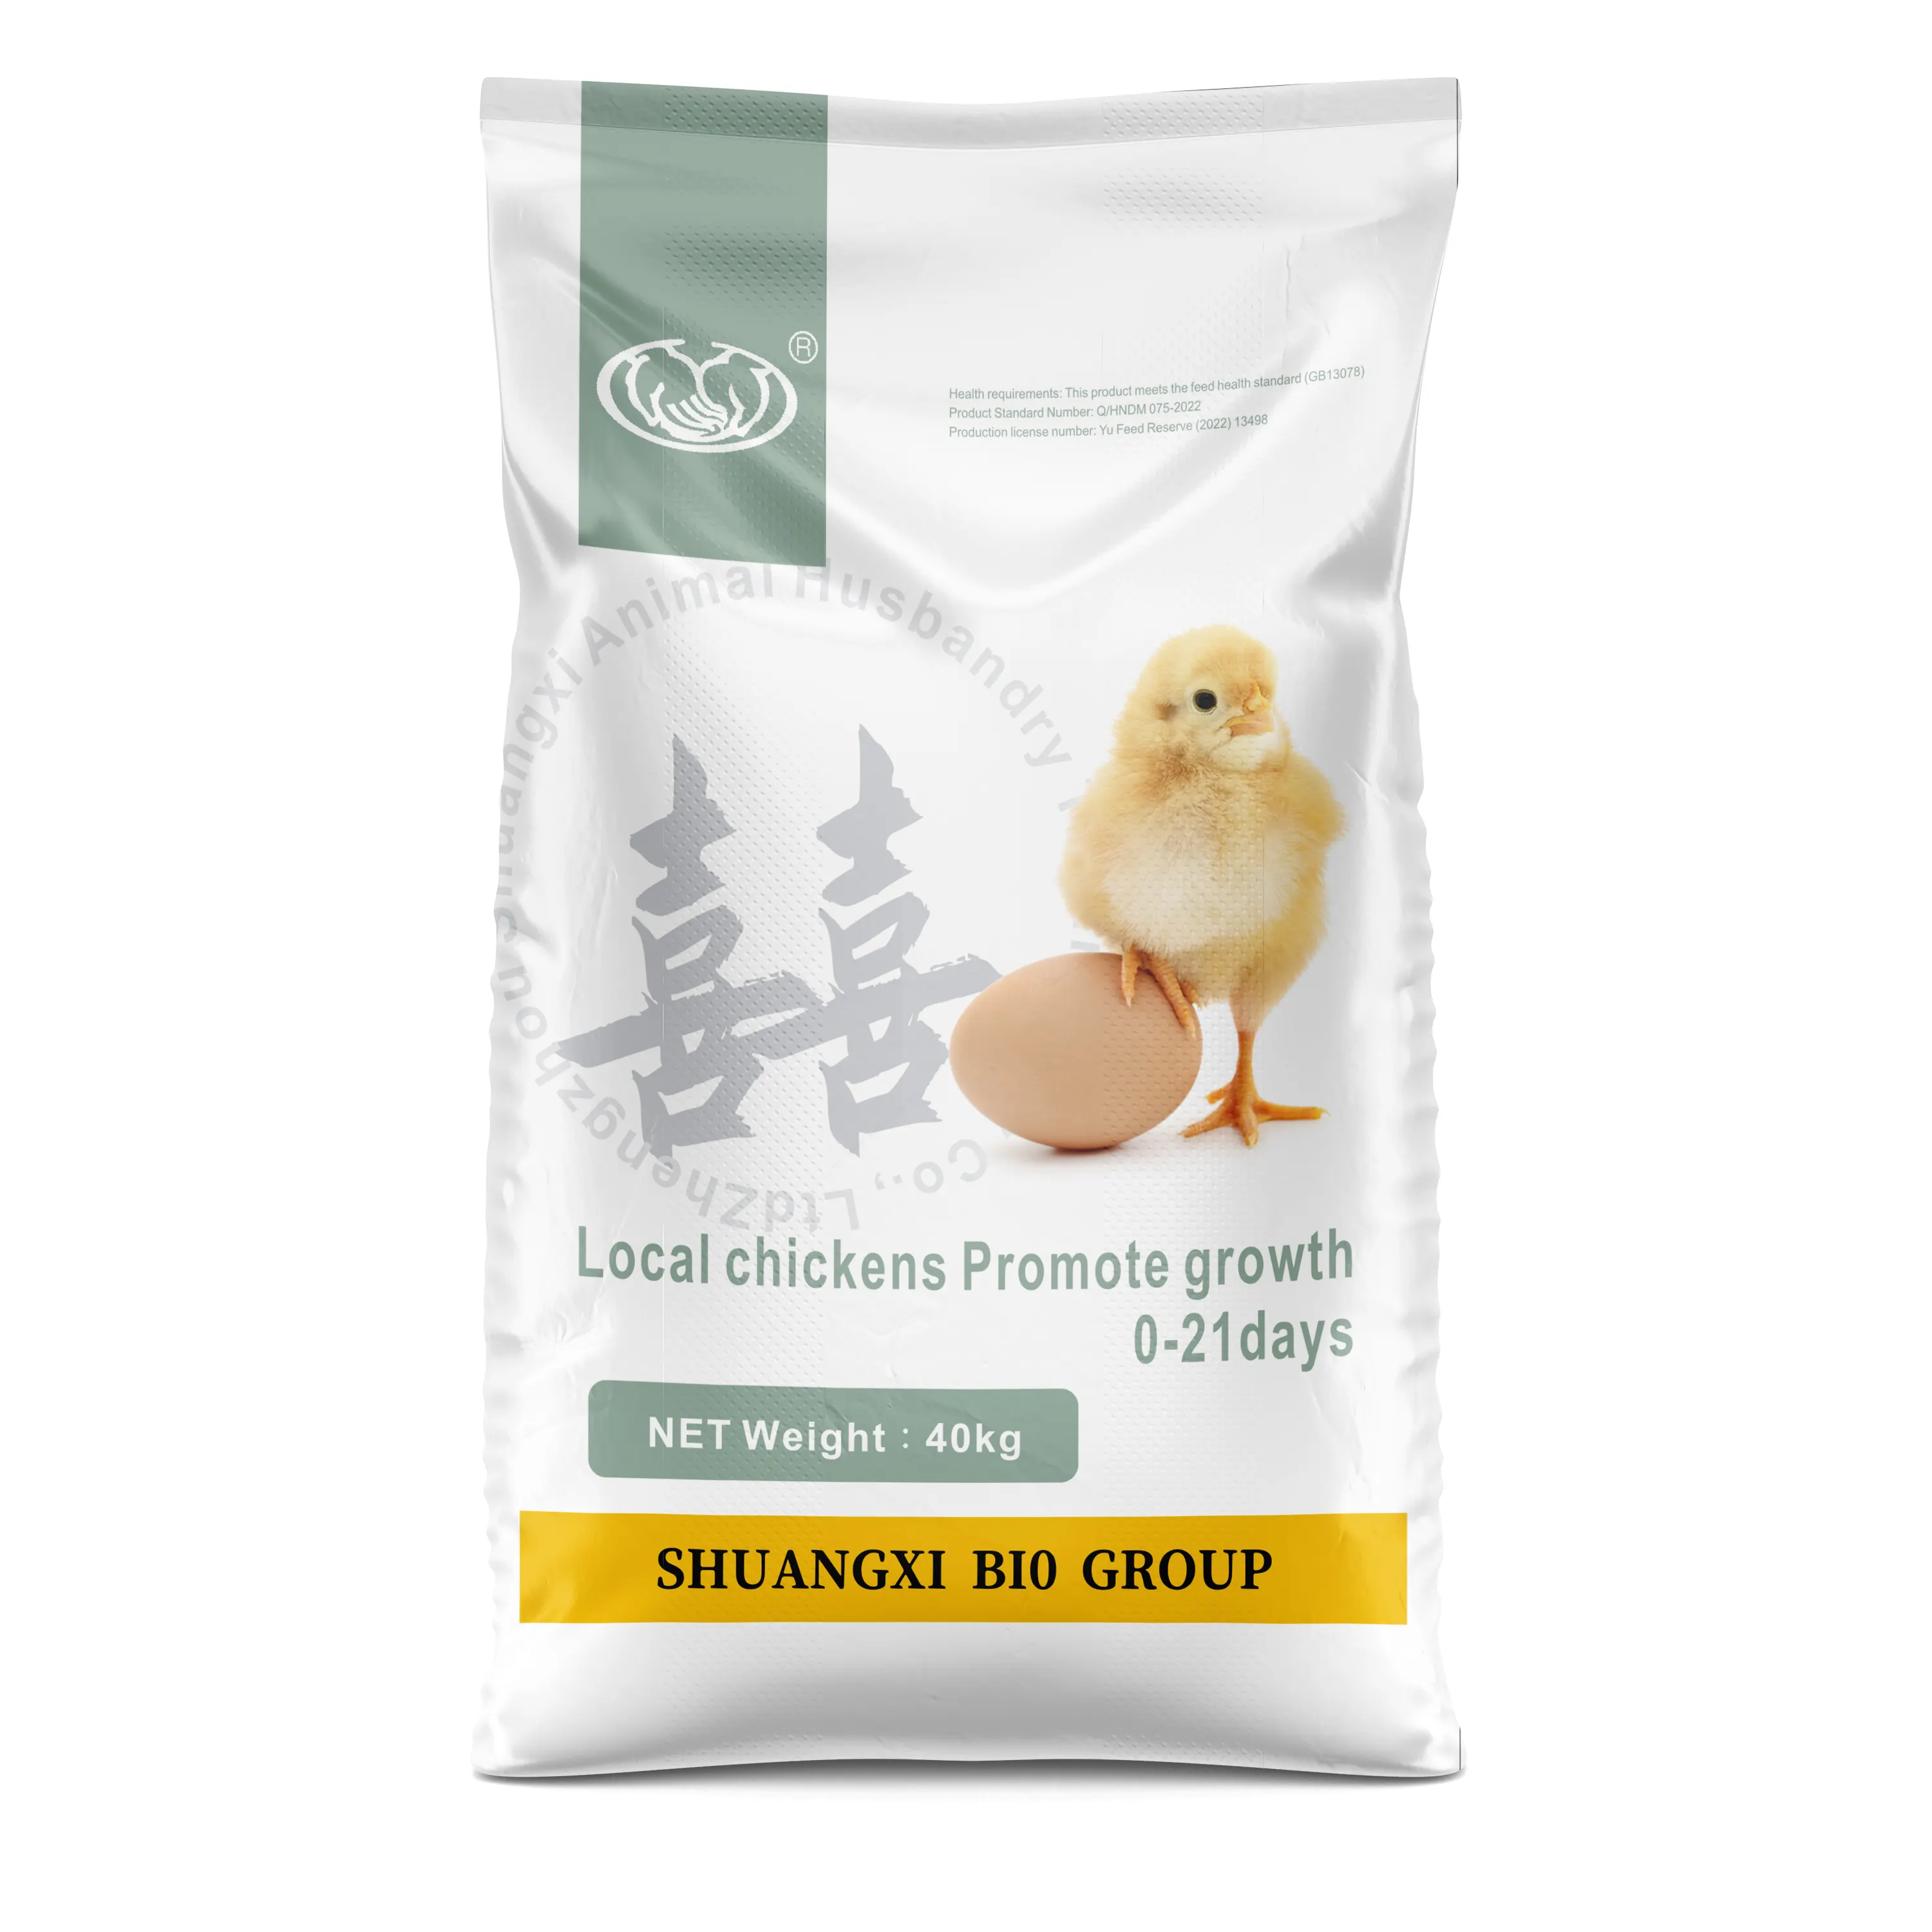 鶏肉飼料の安全環境保護と急速な体重増加のための家禽ペレット